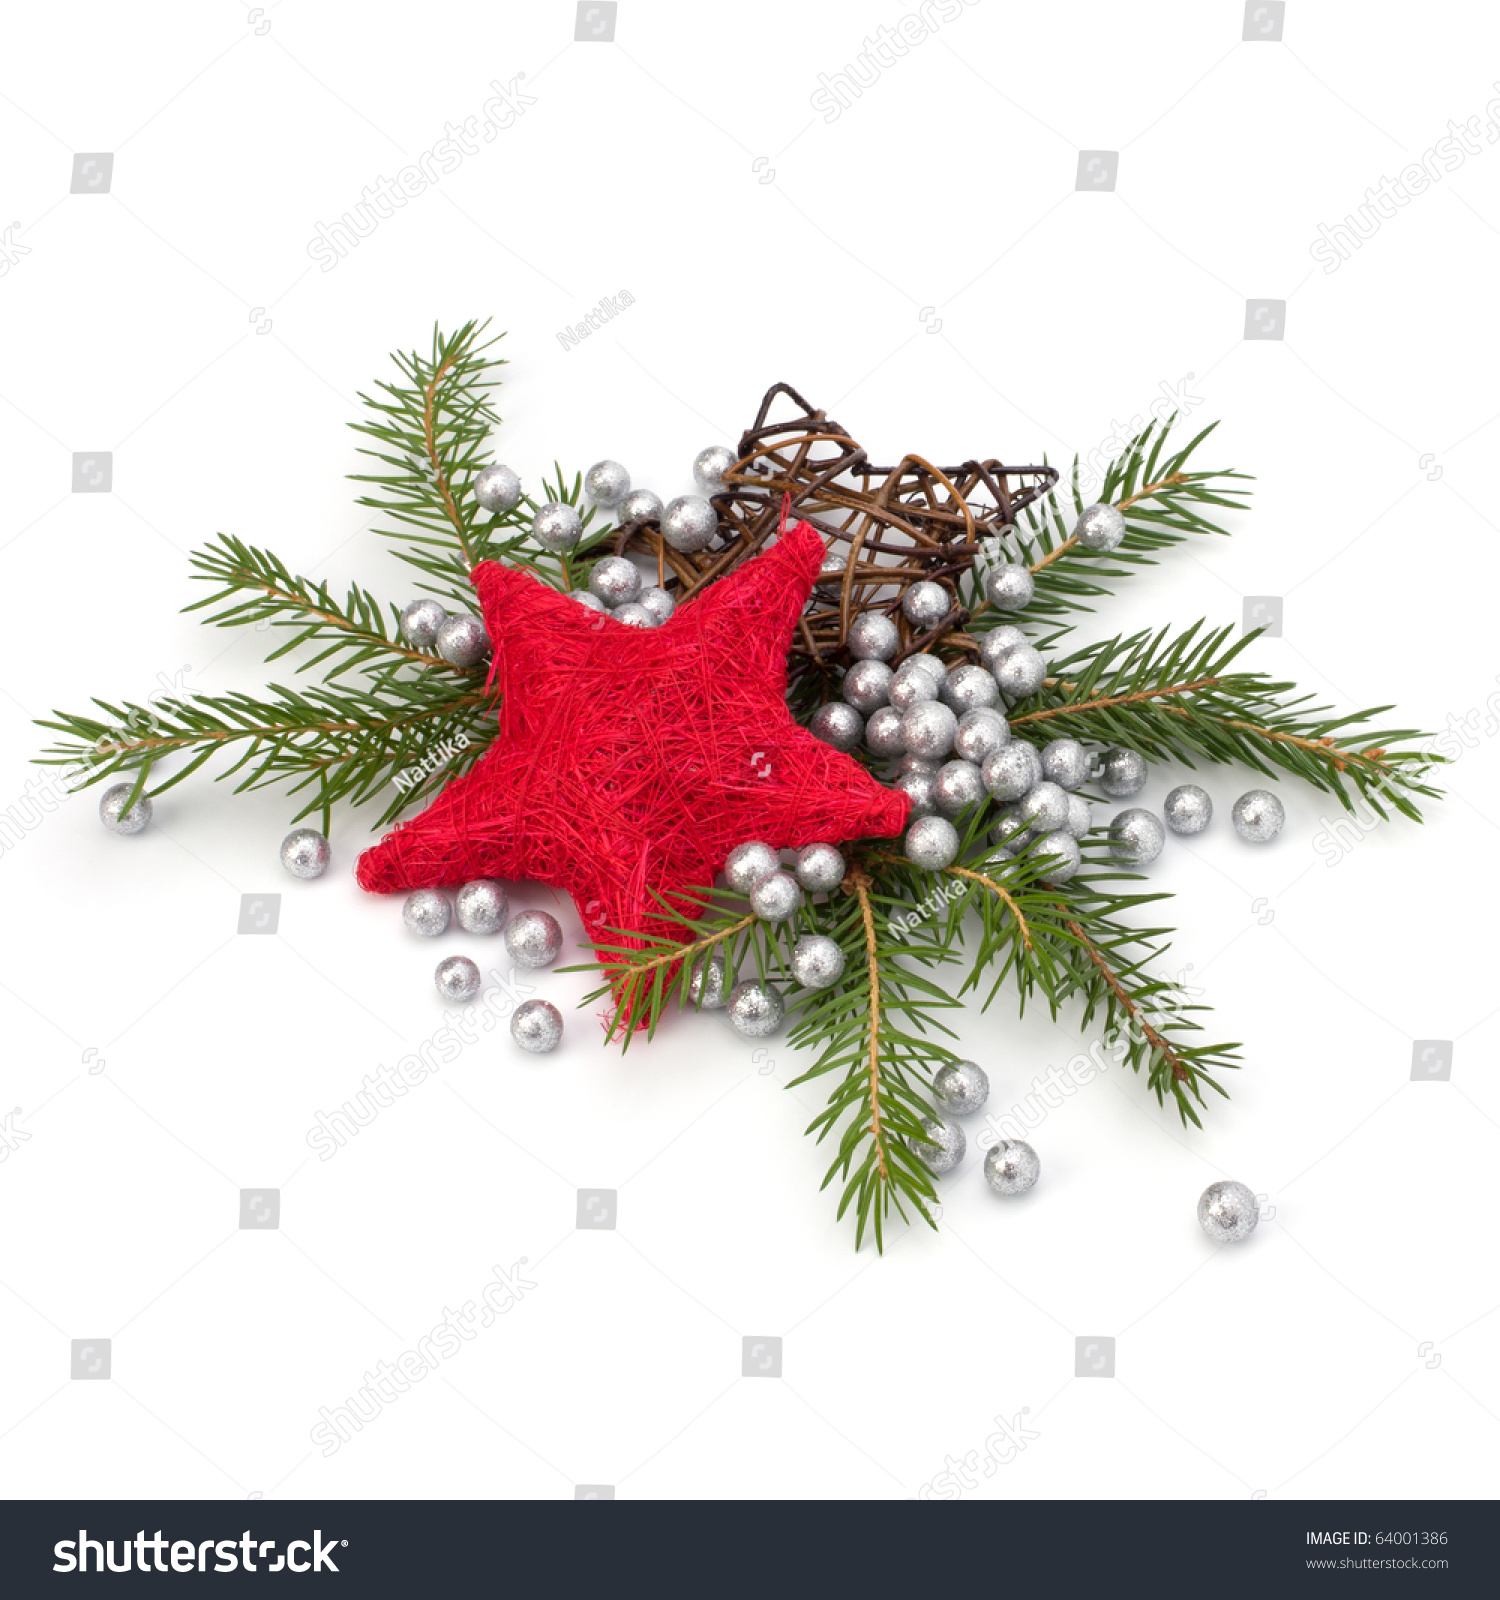 Christmas Decoration Isolated On White Background Stock Photo 64001386 ...